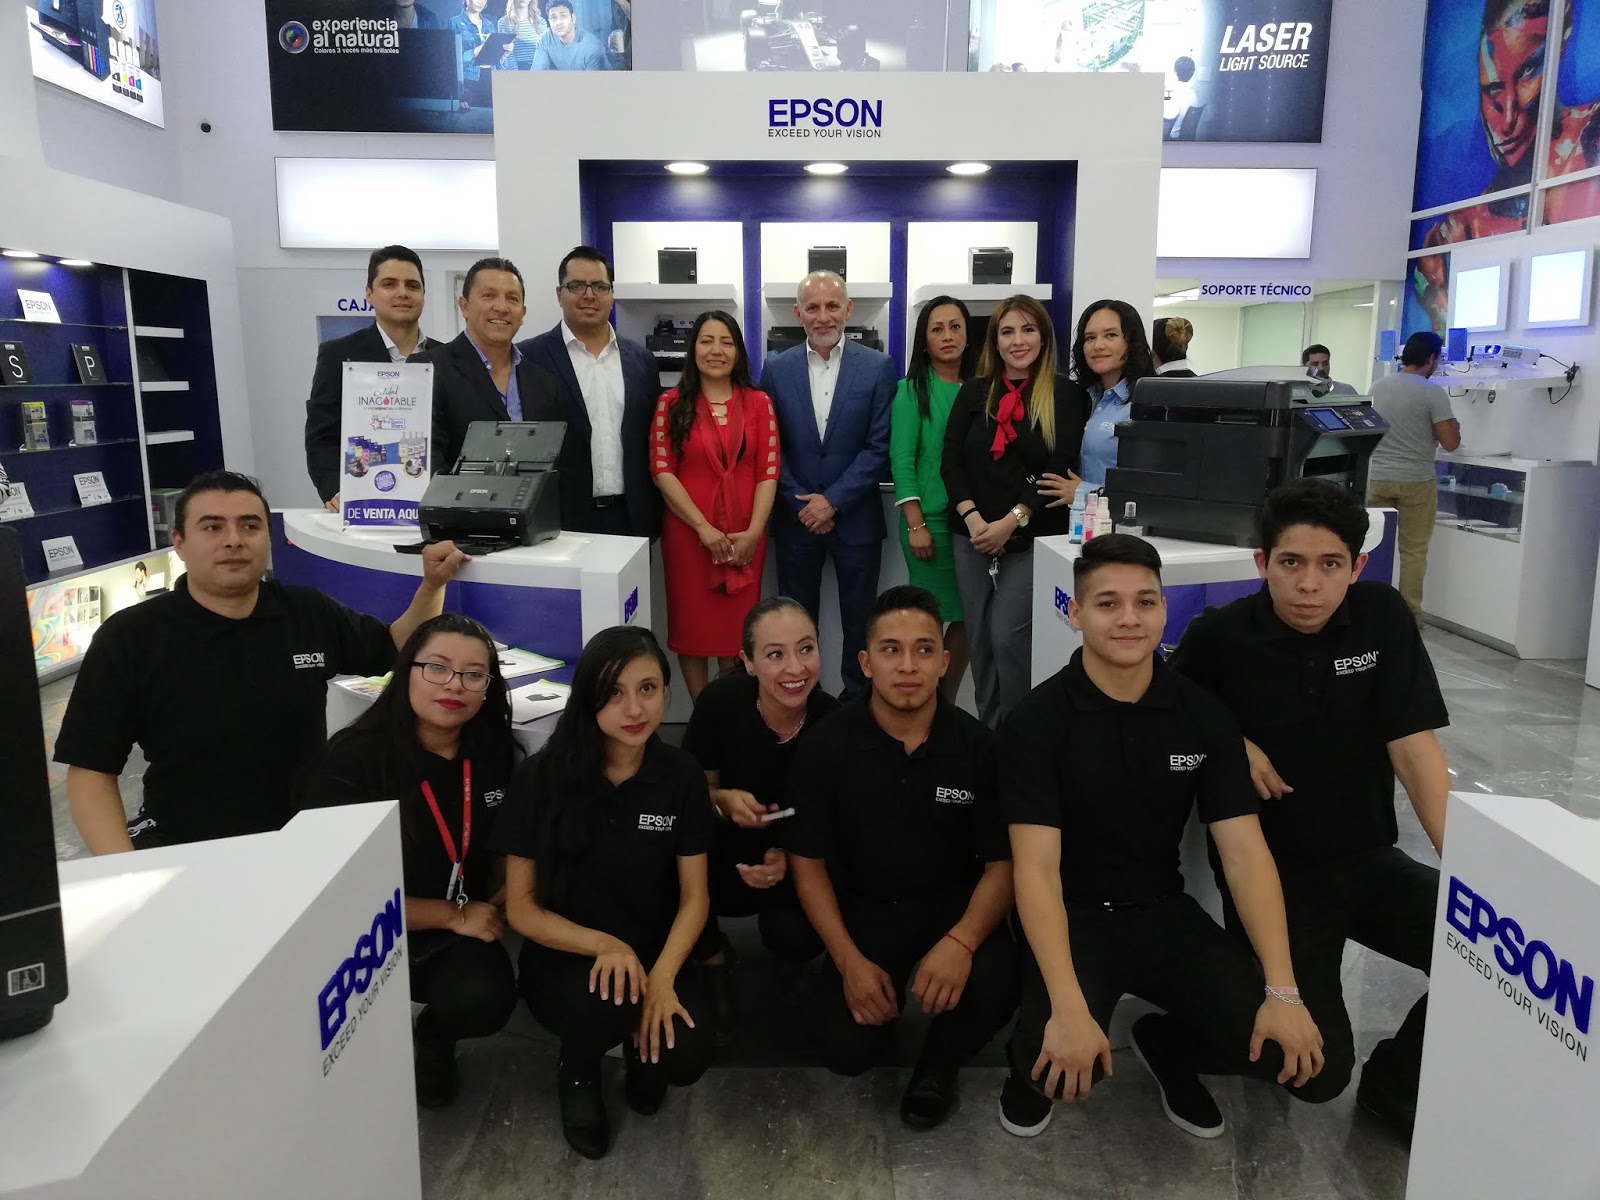 Finalmente Mutuo barril Se inaugura Epson Store, primera tienda de productos de la marca en México